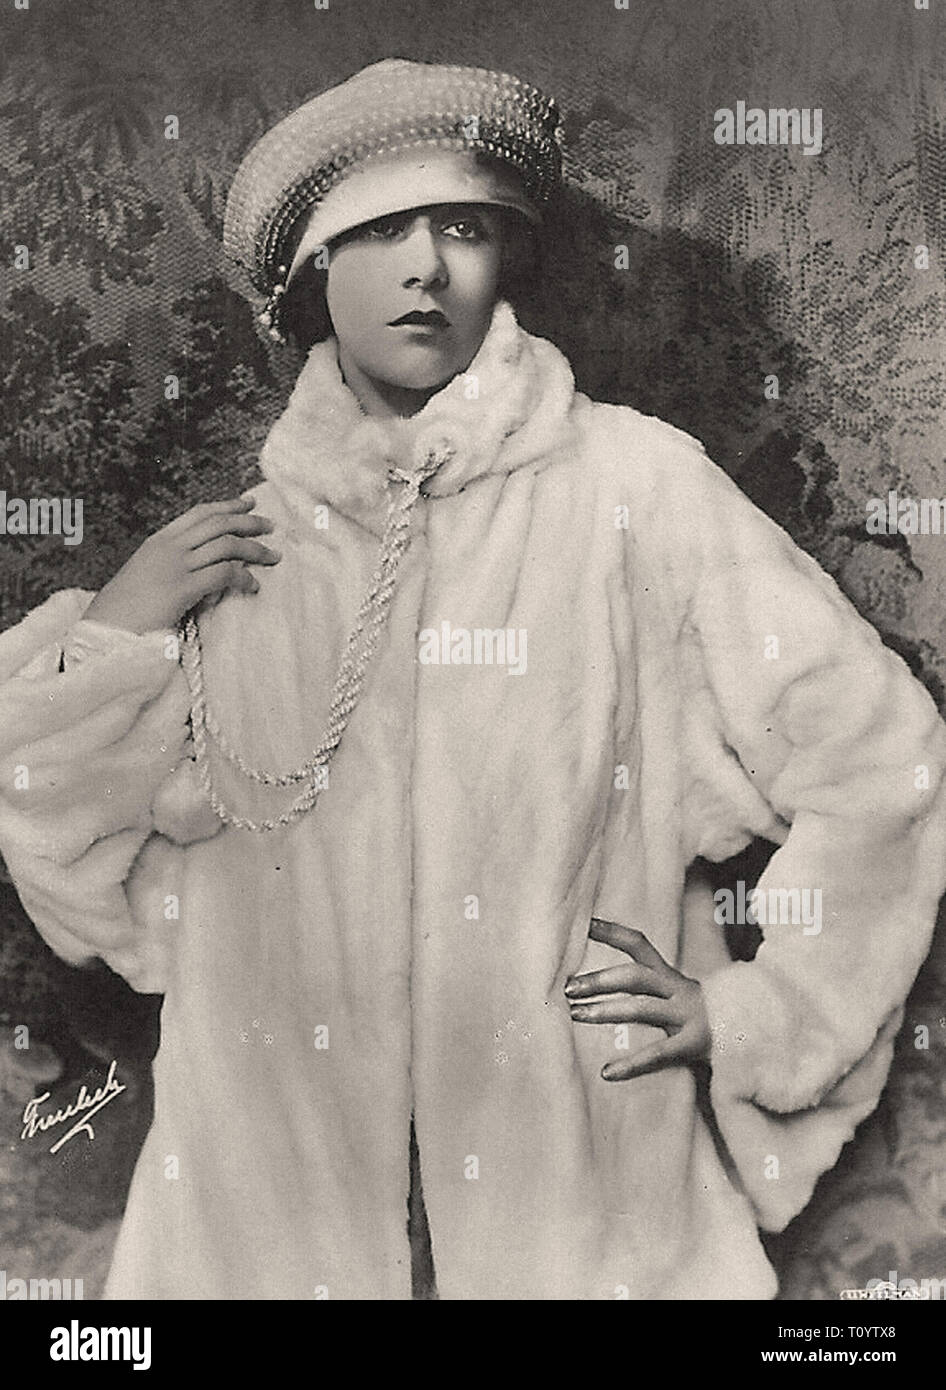 Fotografische Porträt von Virginia Vally - Stummfilmzeit Stockfoto